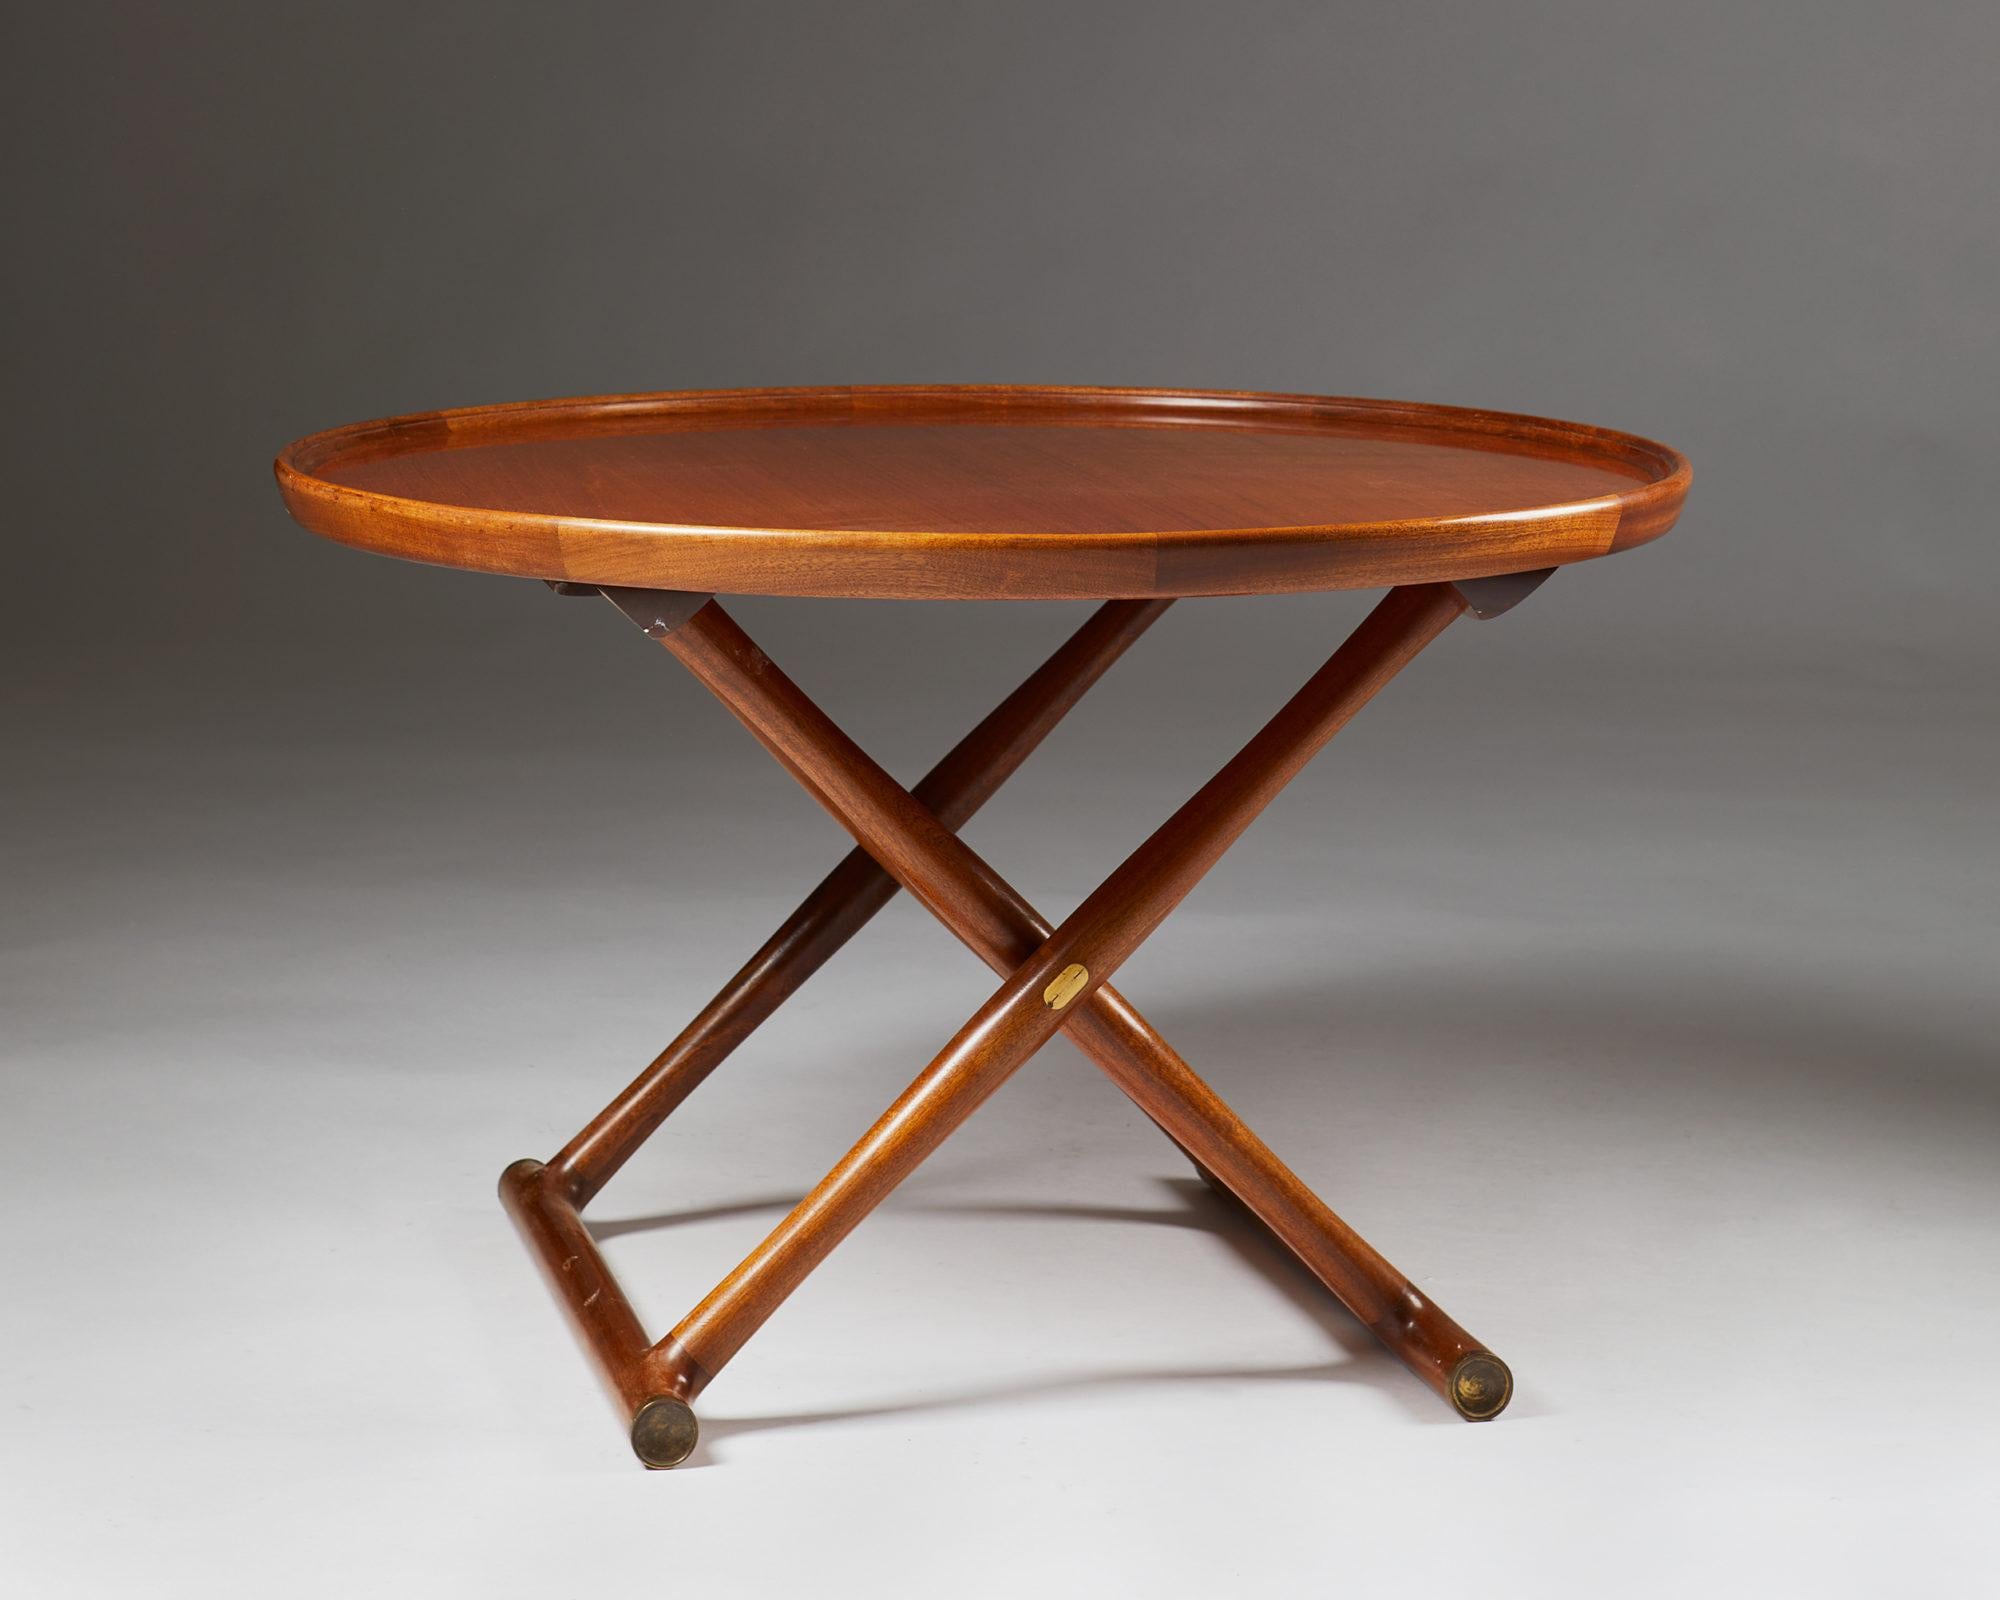 Scandinavian Modern Occasional Table “Egyptian Table” Designed by Mogens Lassen, Denmark, 1940s